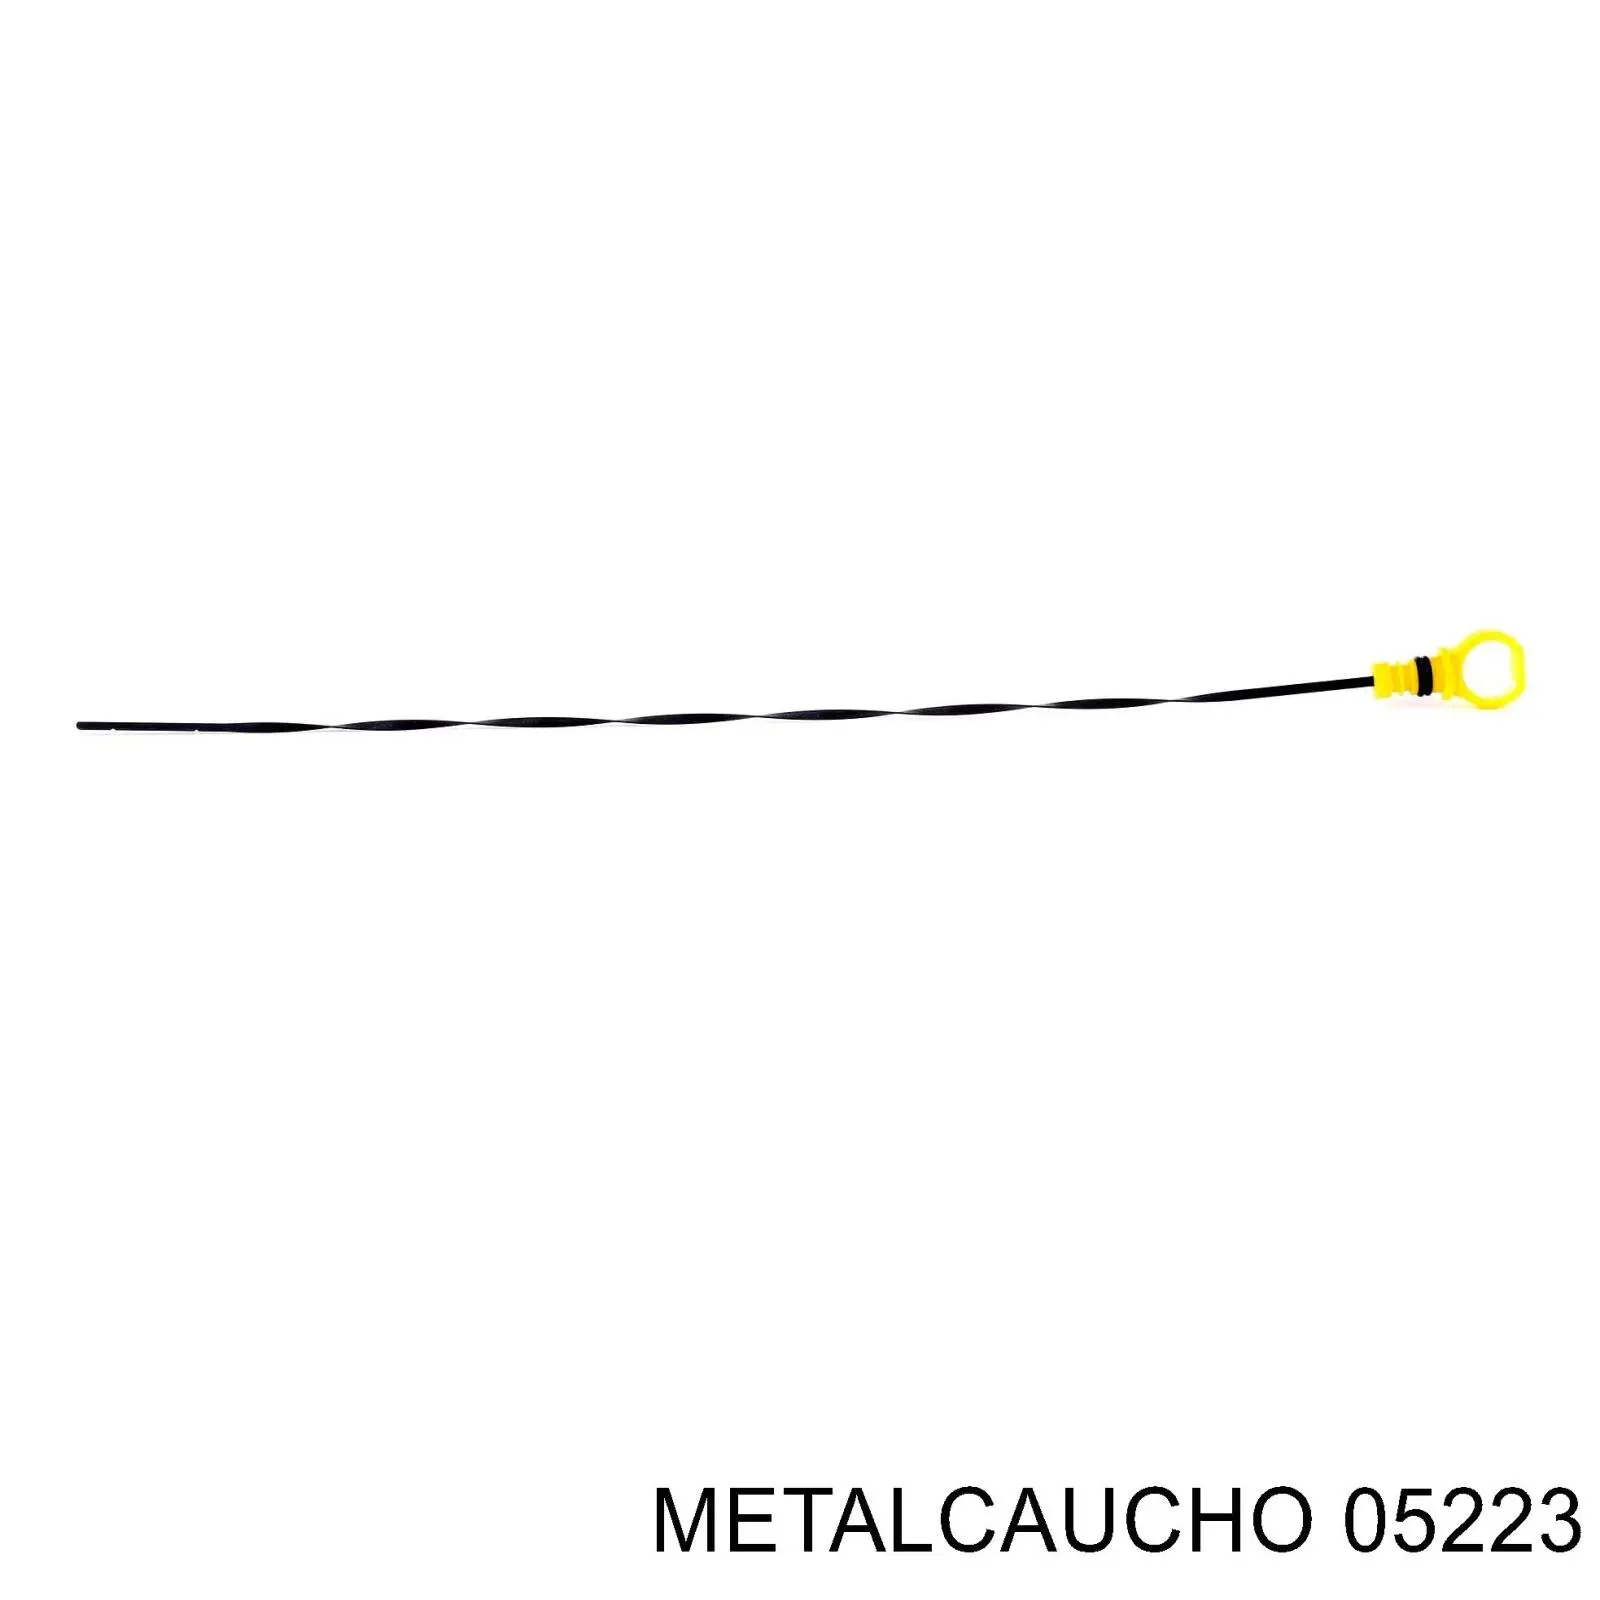 05223 Metalcaucho щуп (индикатор уровня масла в двигателе)